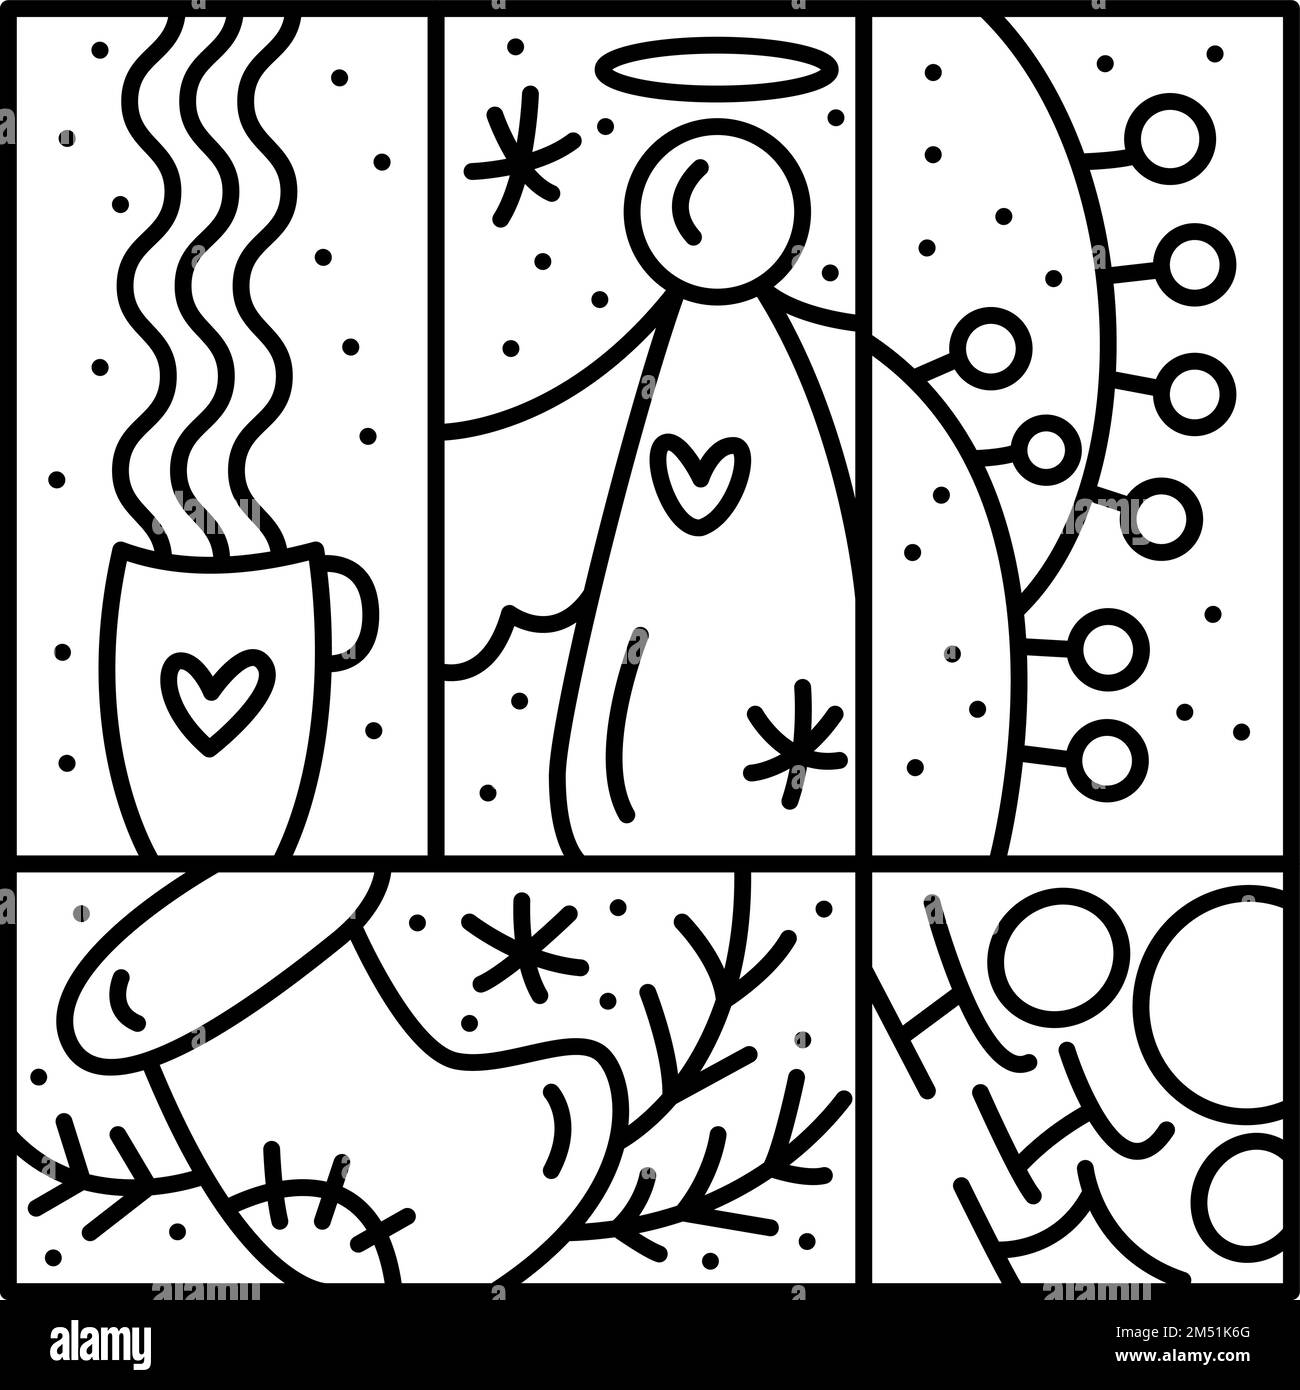 Vector Christmas logo avvento composizione agrifoglio, ghirlanda, abete e neve. Costruttore monolino invernale disegnato a mano in cornice quadrata per salutare Illustrazione Vettoriale